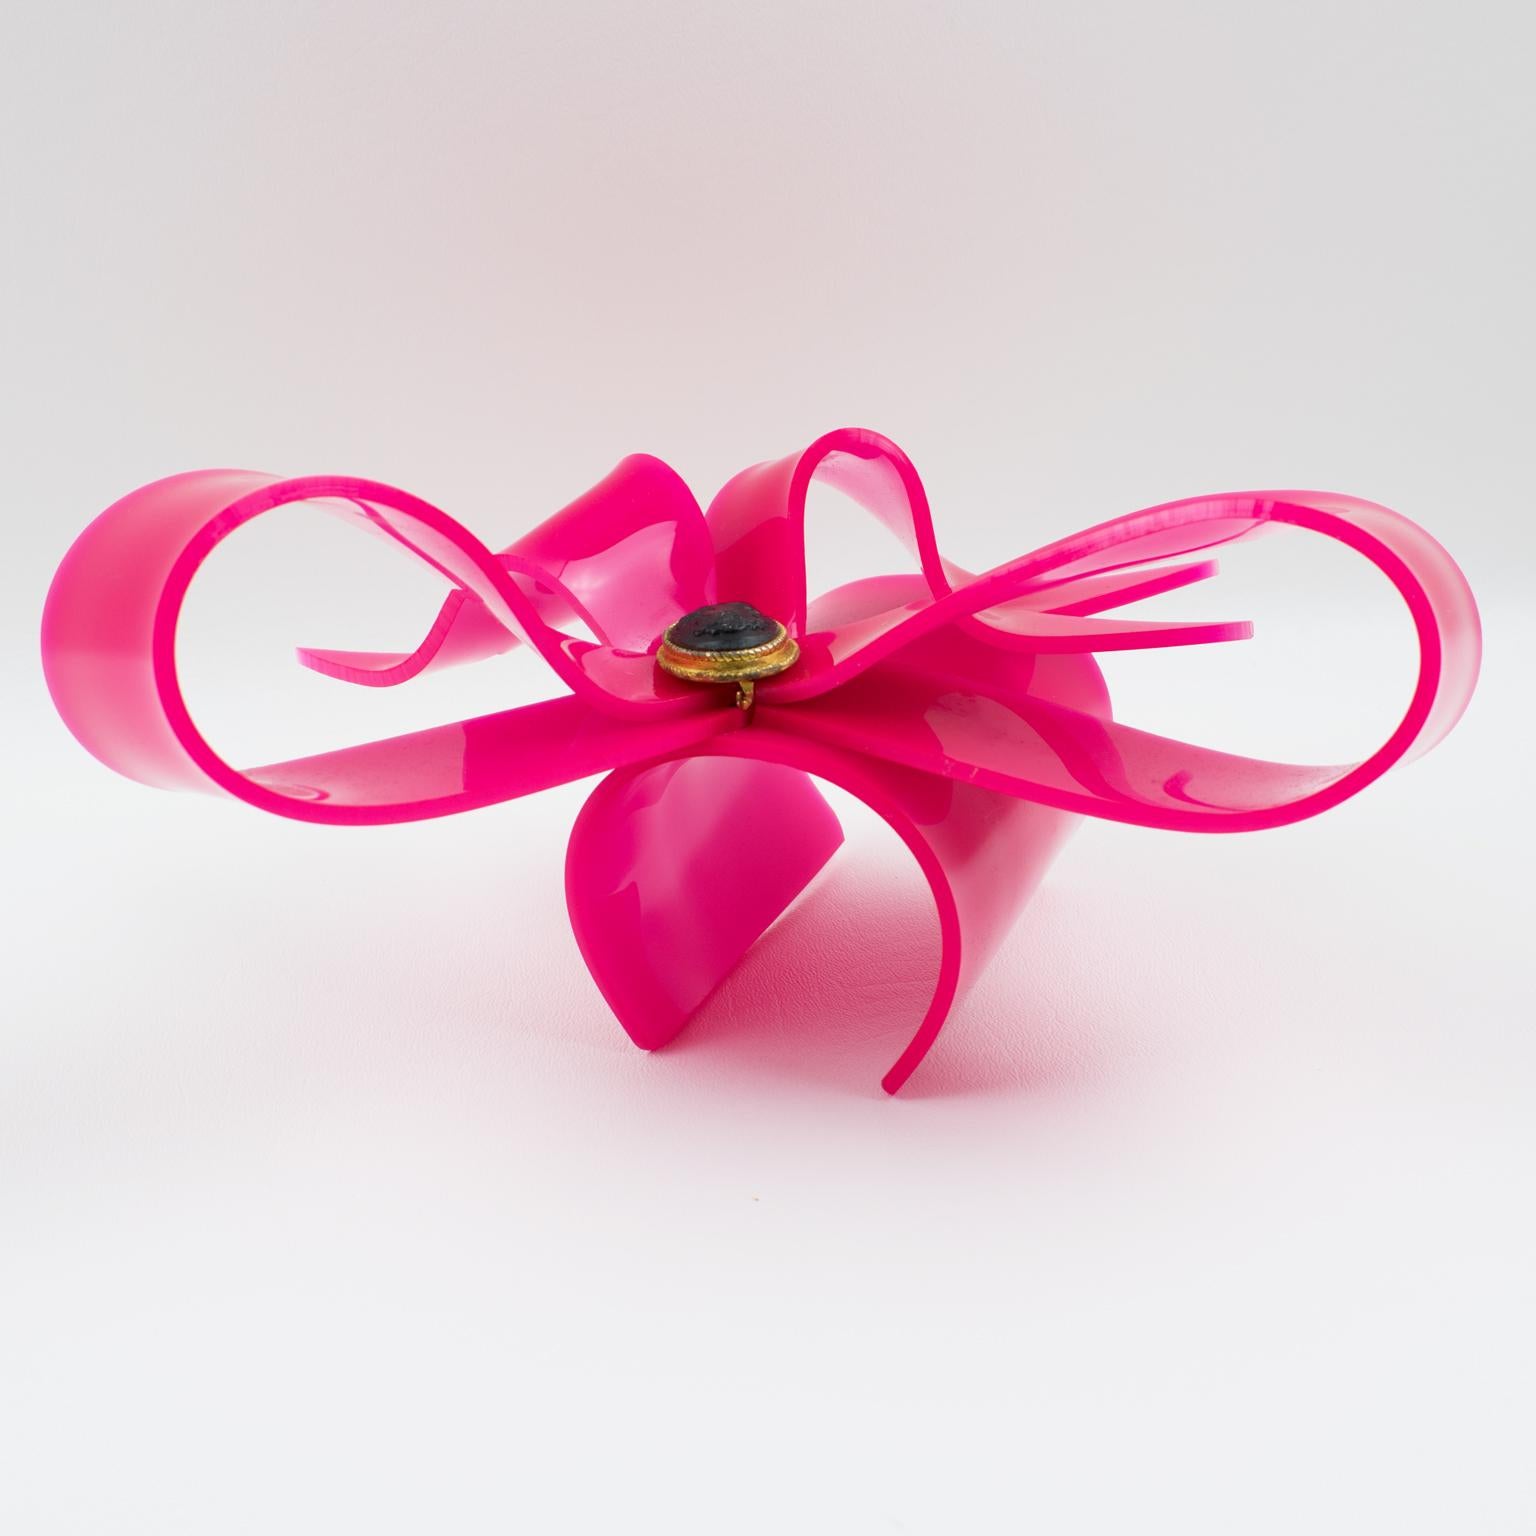 Vivienne Westwood Prototype Cuff Bangle Bracelet Pink Acrylic Bow 6